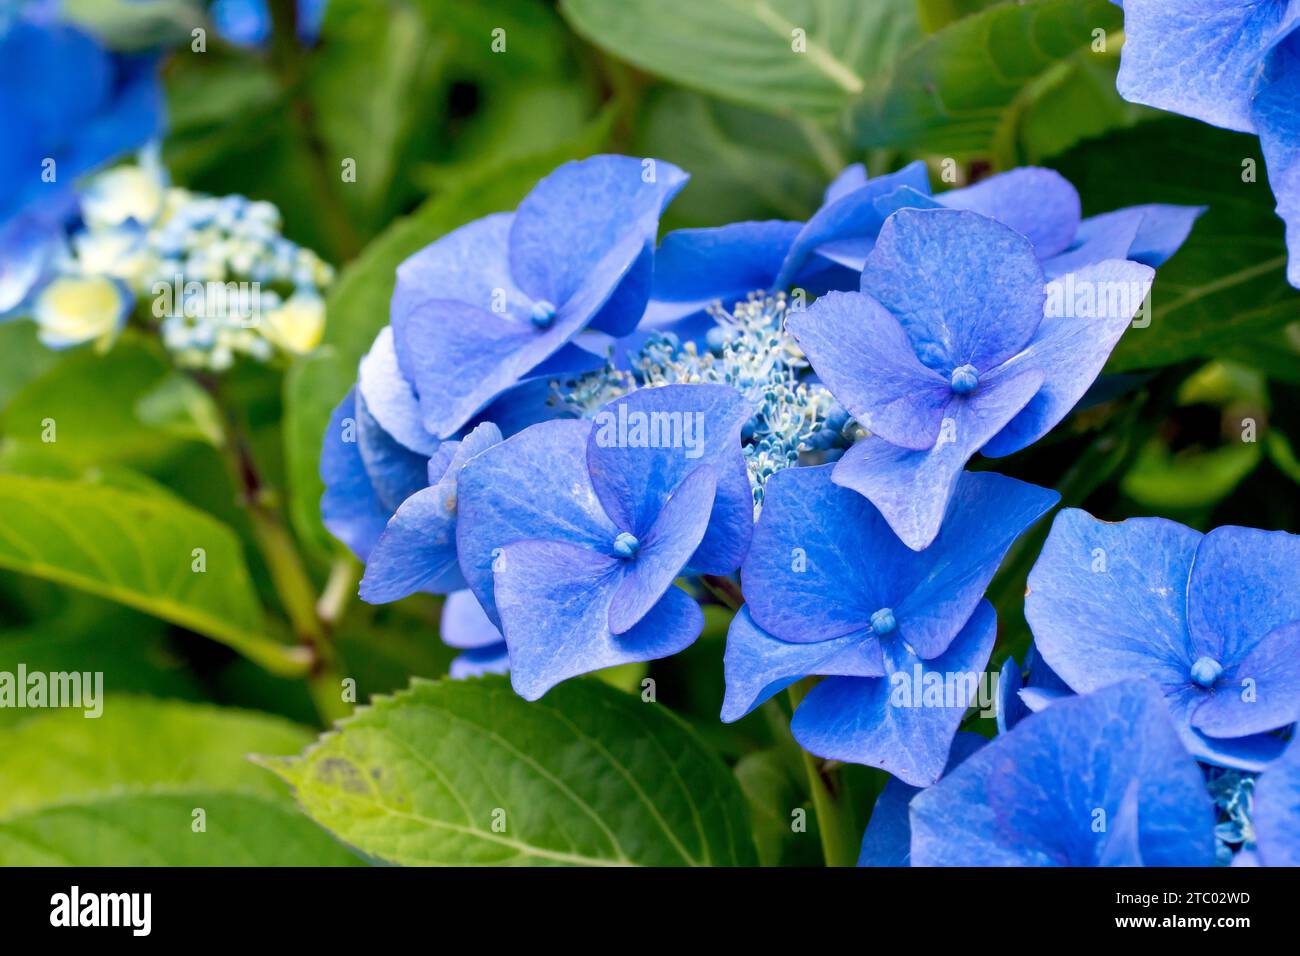 Blaue Spitzenkappe Hydrangea, Nahaufnahme mit Fokus auf einen einzelnen Blumenkopf des Strauchs, der die großen blauen äußeren Blüten und kleineren inneren Blüten zeigt. Stockfoto